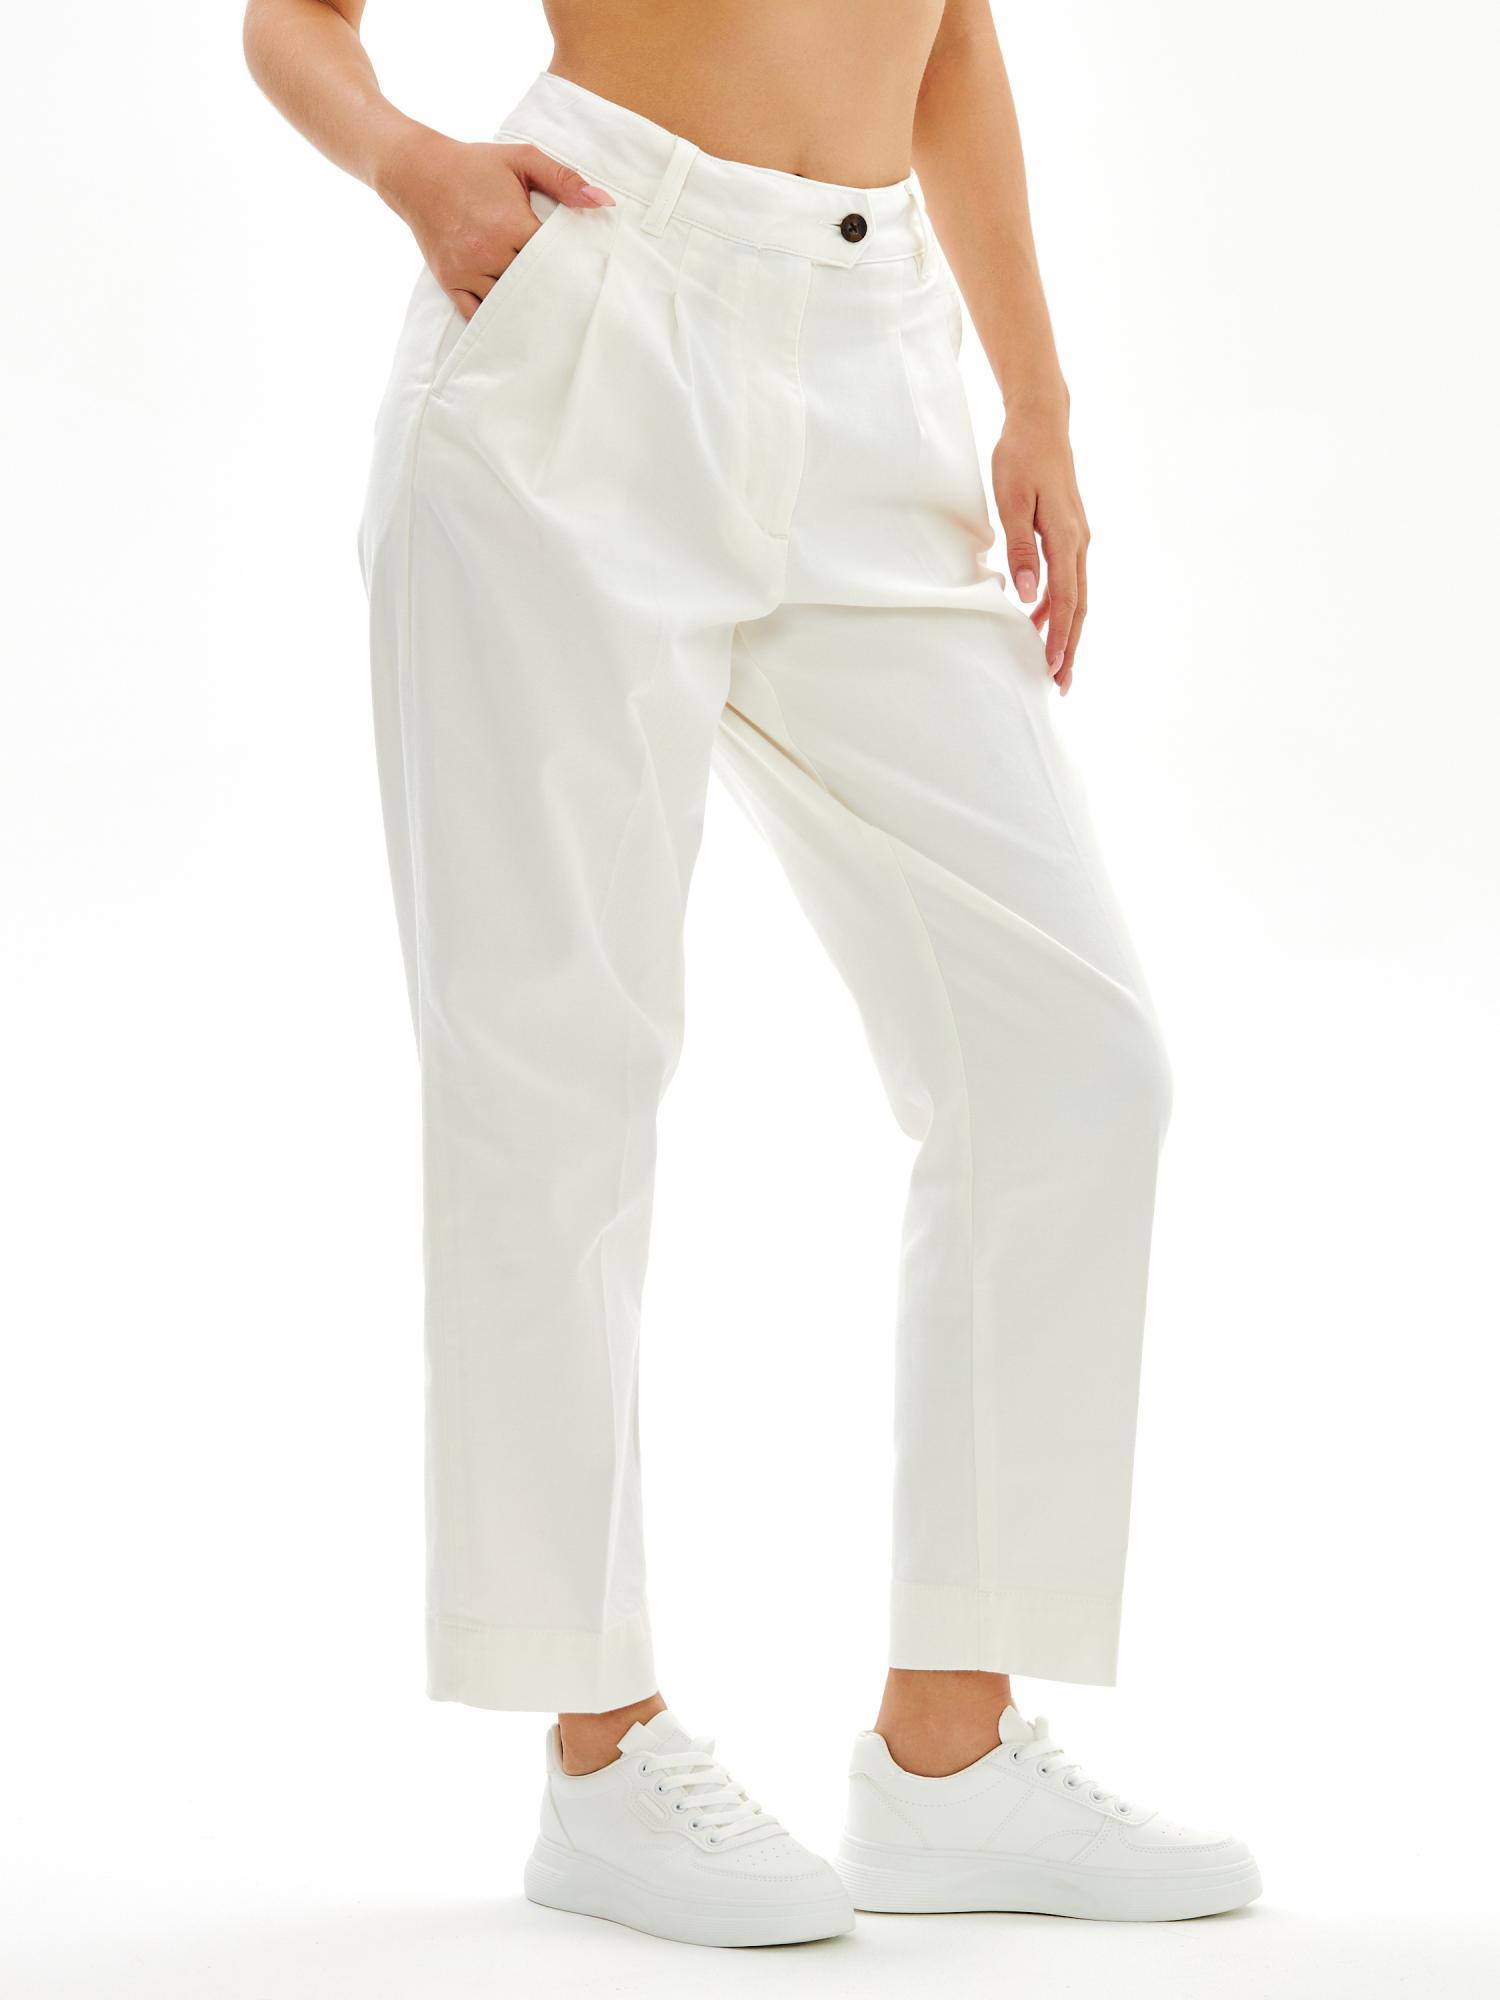 Женские брюки чинос Gant, белые, цвет белый, размер 34 - фото 1